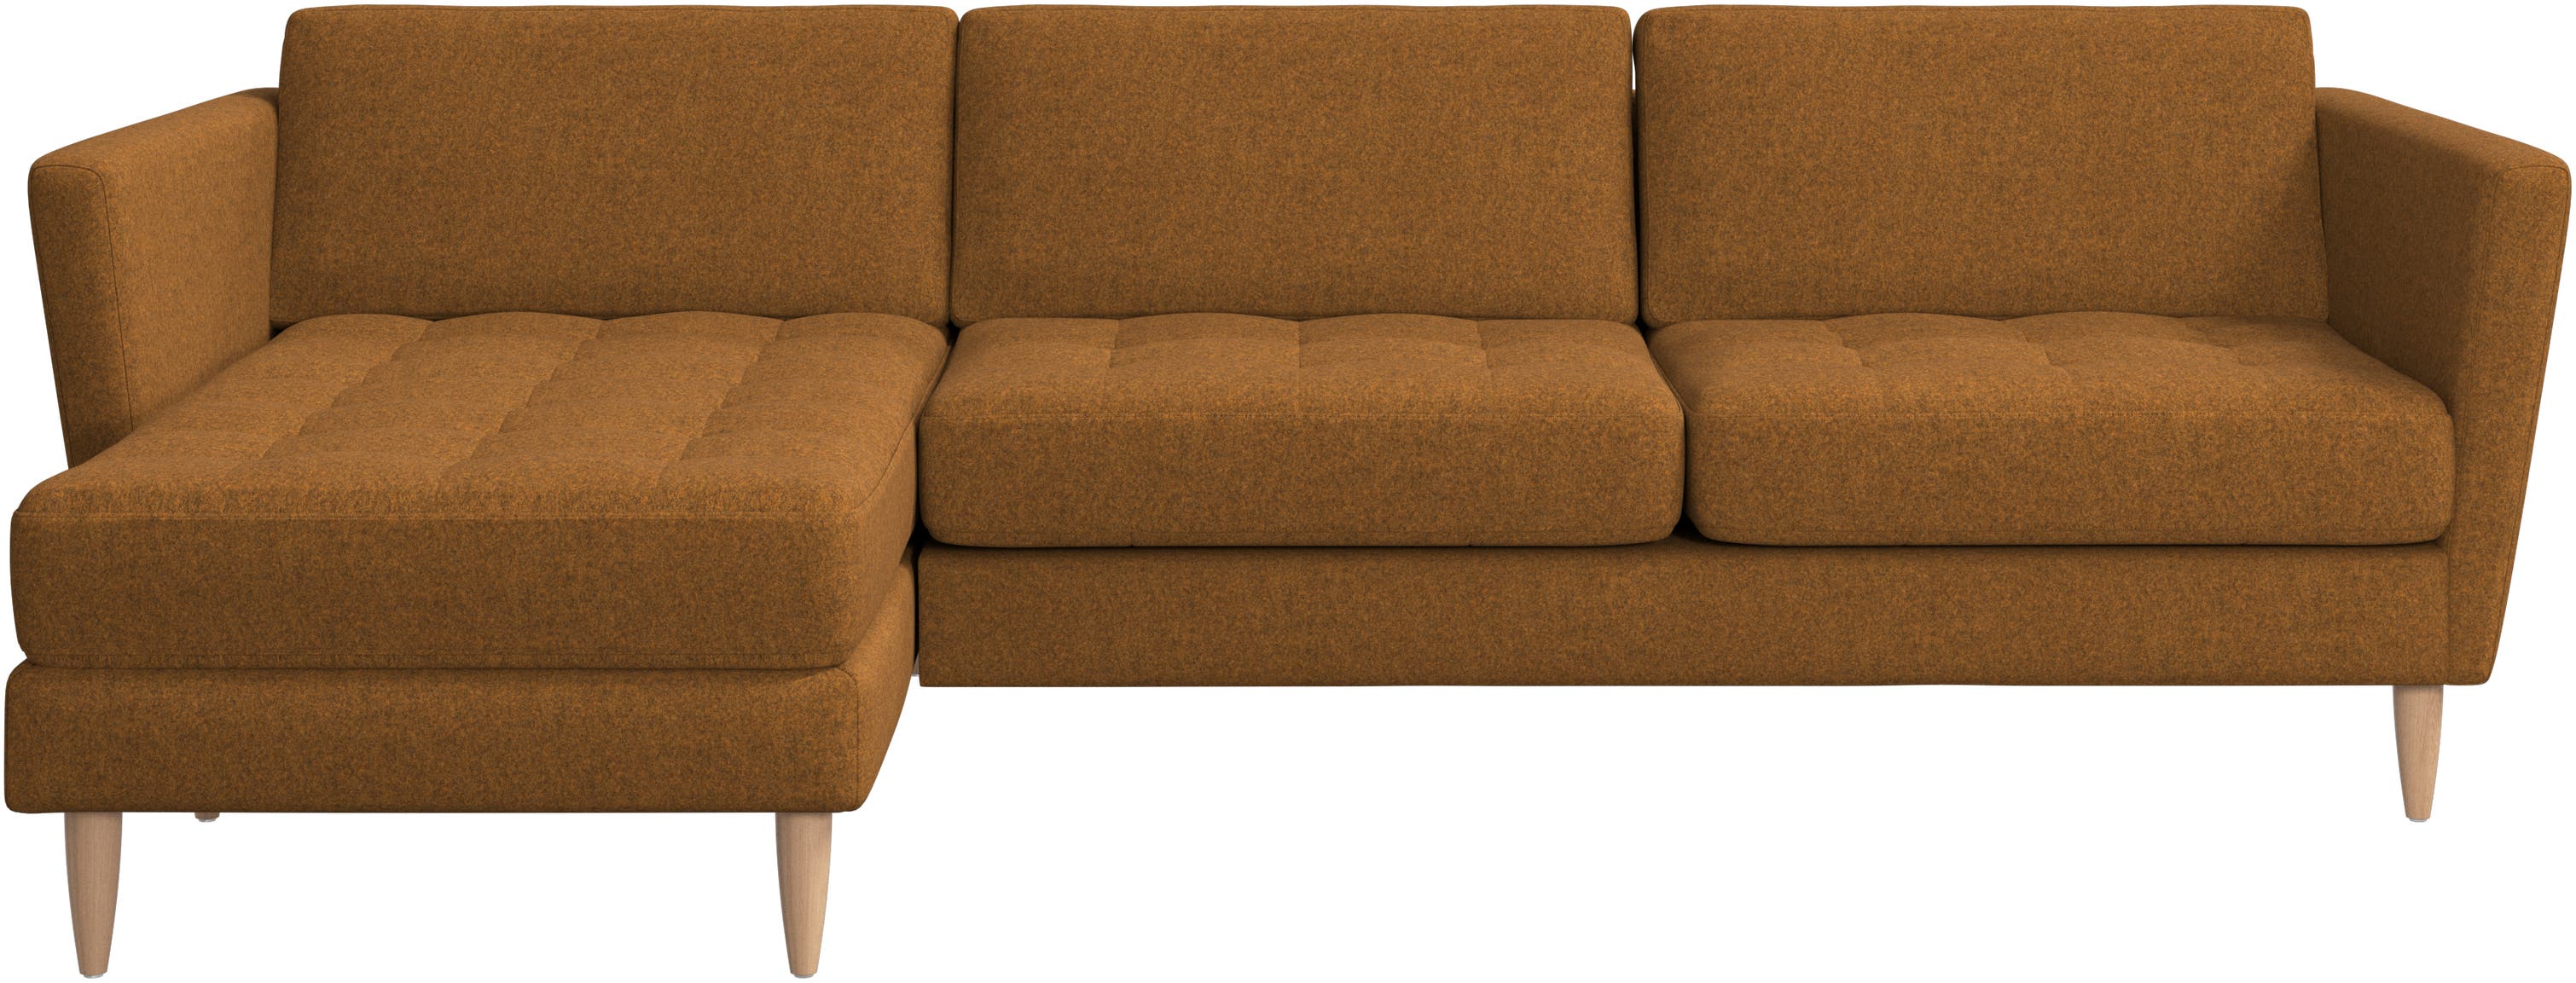 Osaka-sohva, sisältää lepomoduulin, tuftattu istuin